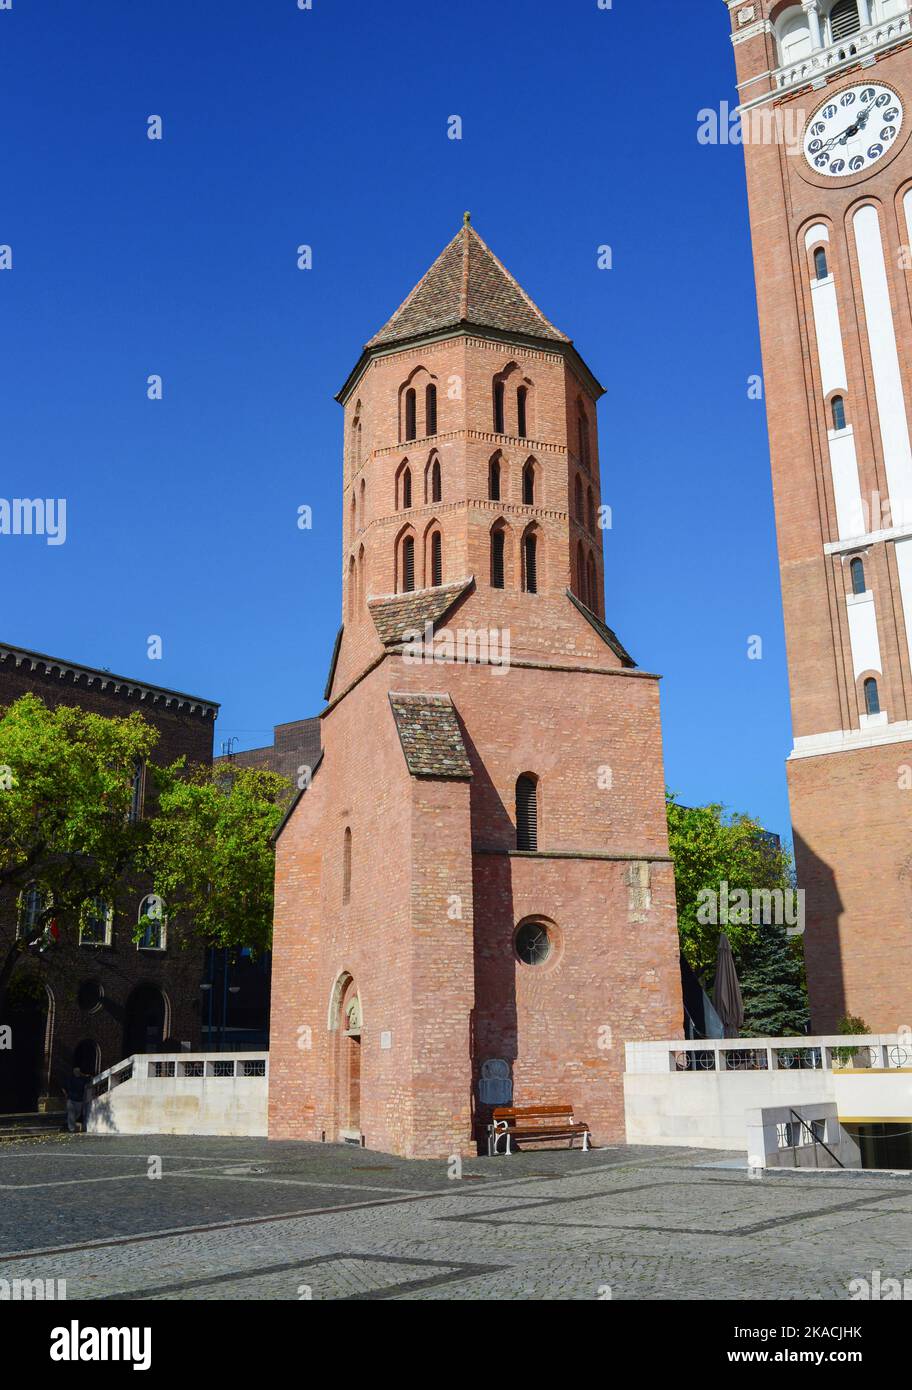 Szeged city Hungary The Domotor tower landmark architecture Stock Photo